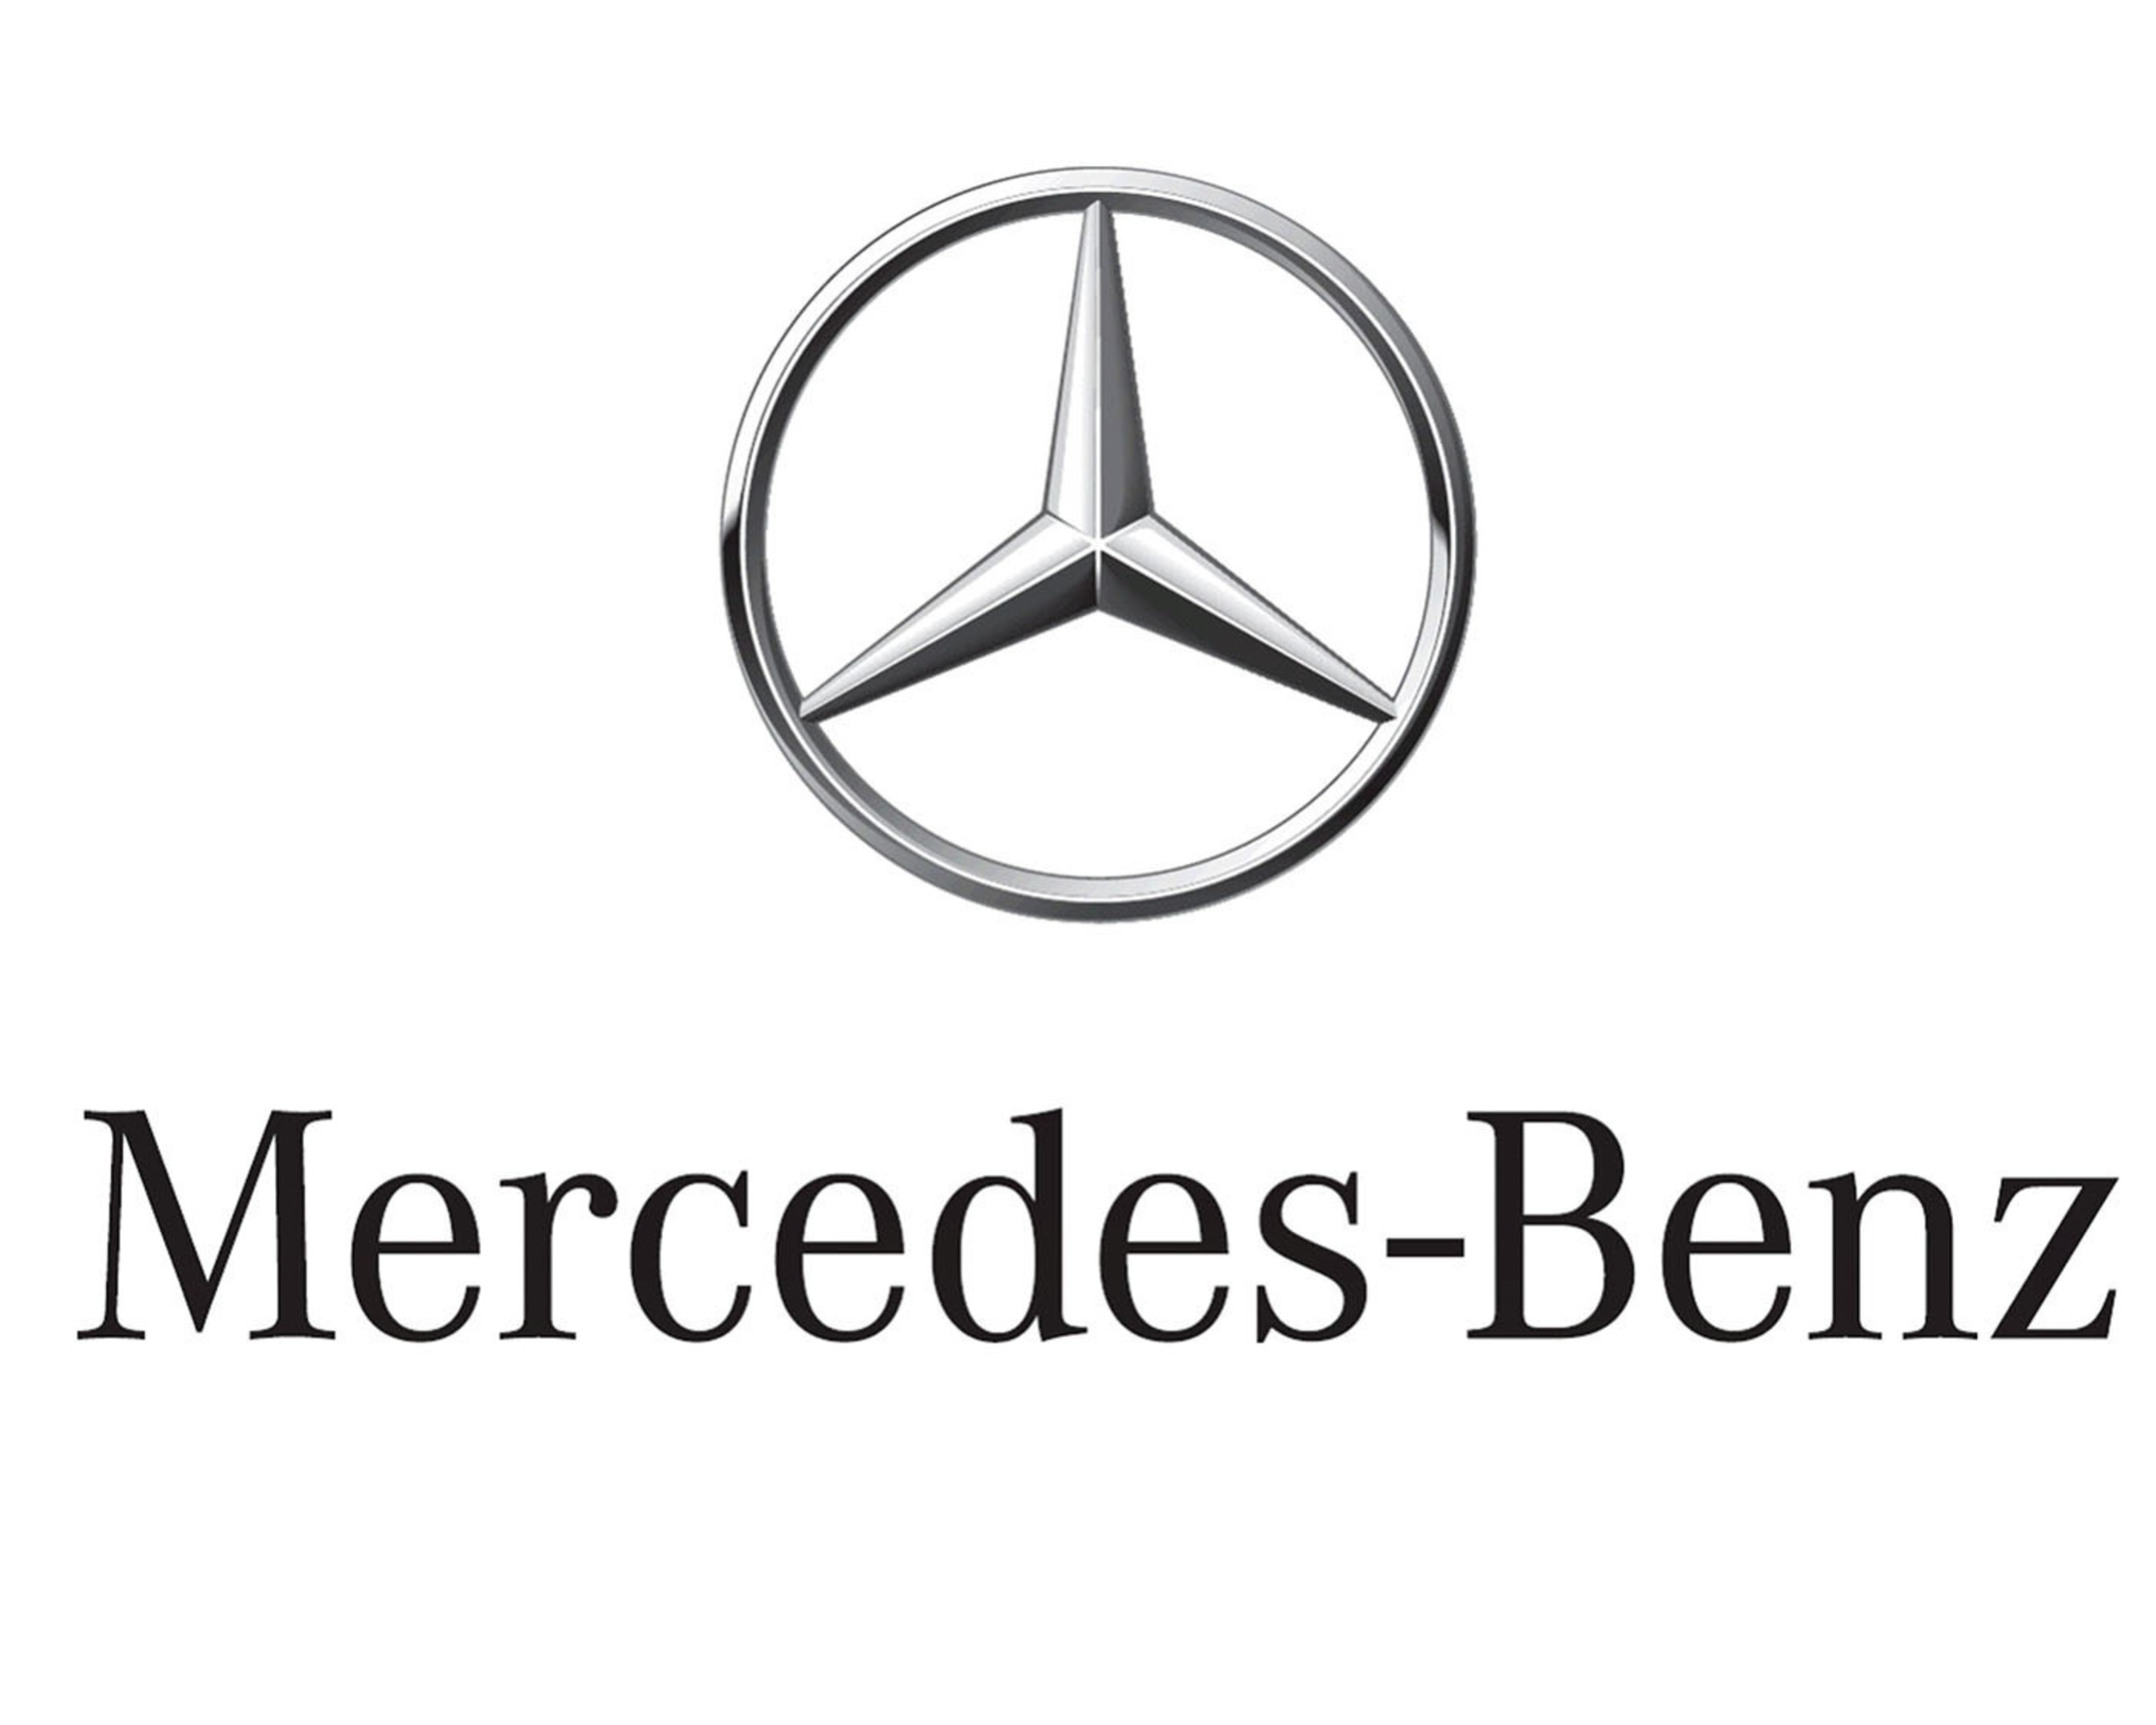 New 2011 3D Mercedes-Benz USA logo.